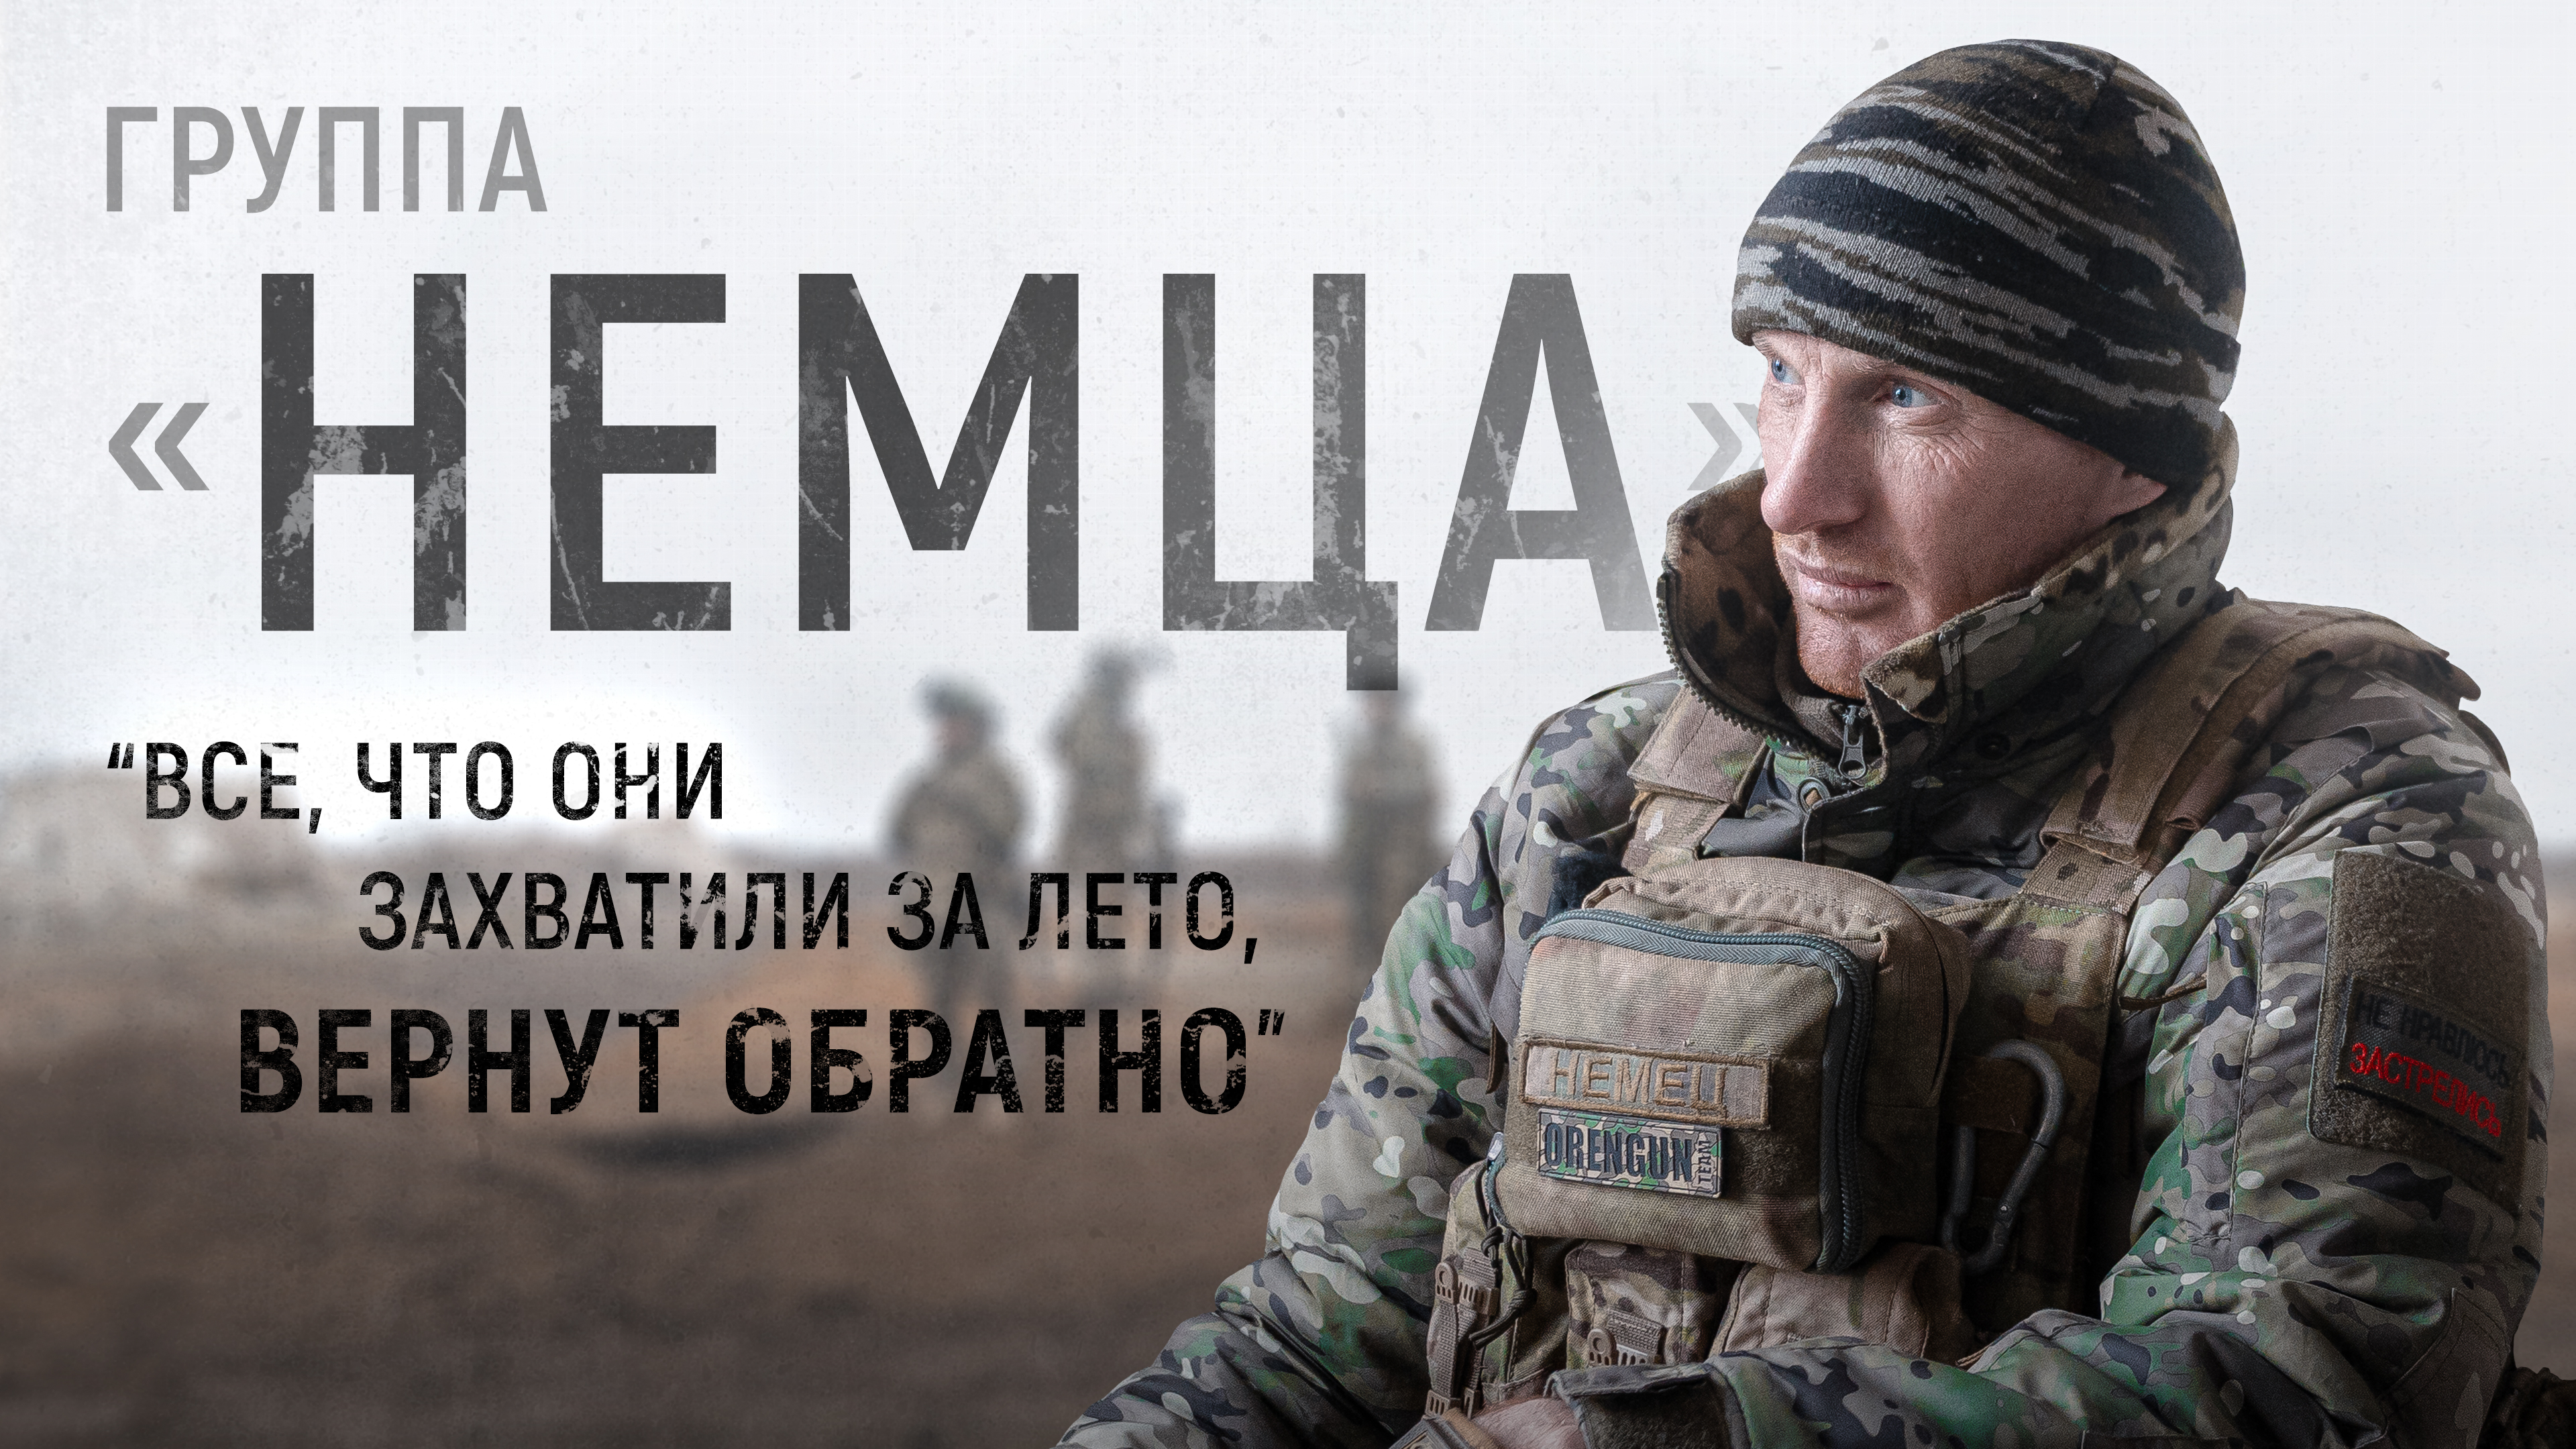 Интервью Readovka со снайпером, который вернулся на фронт после трех тяжелых ранений